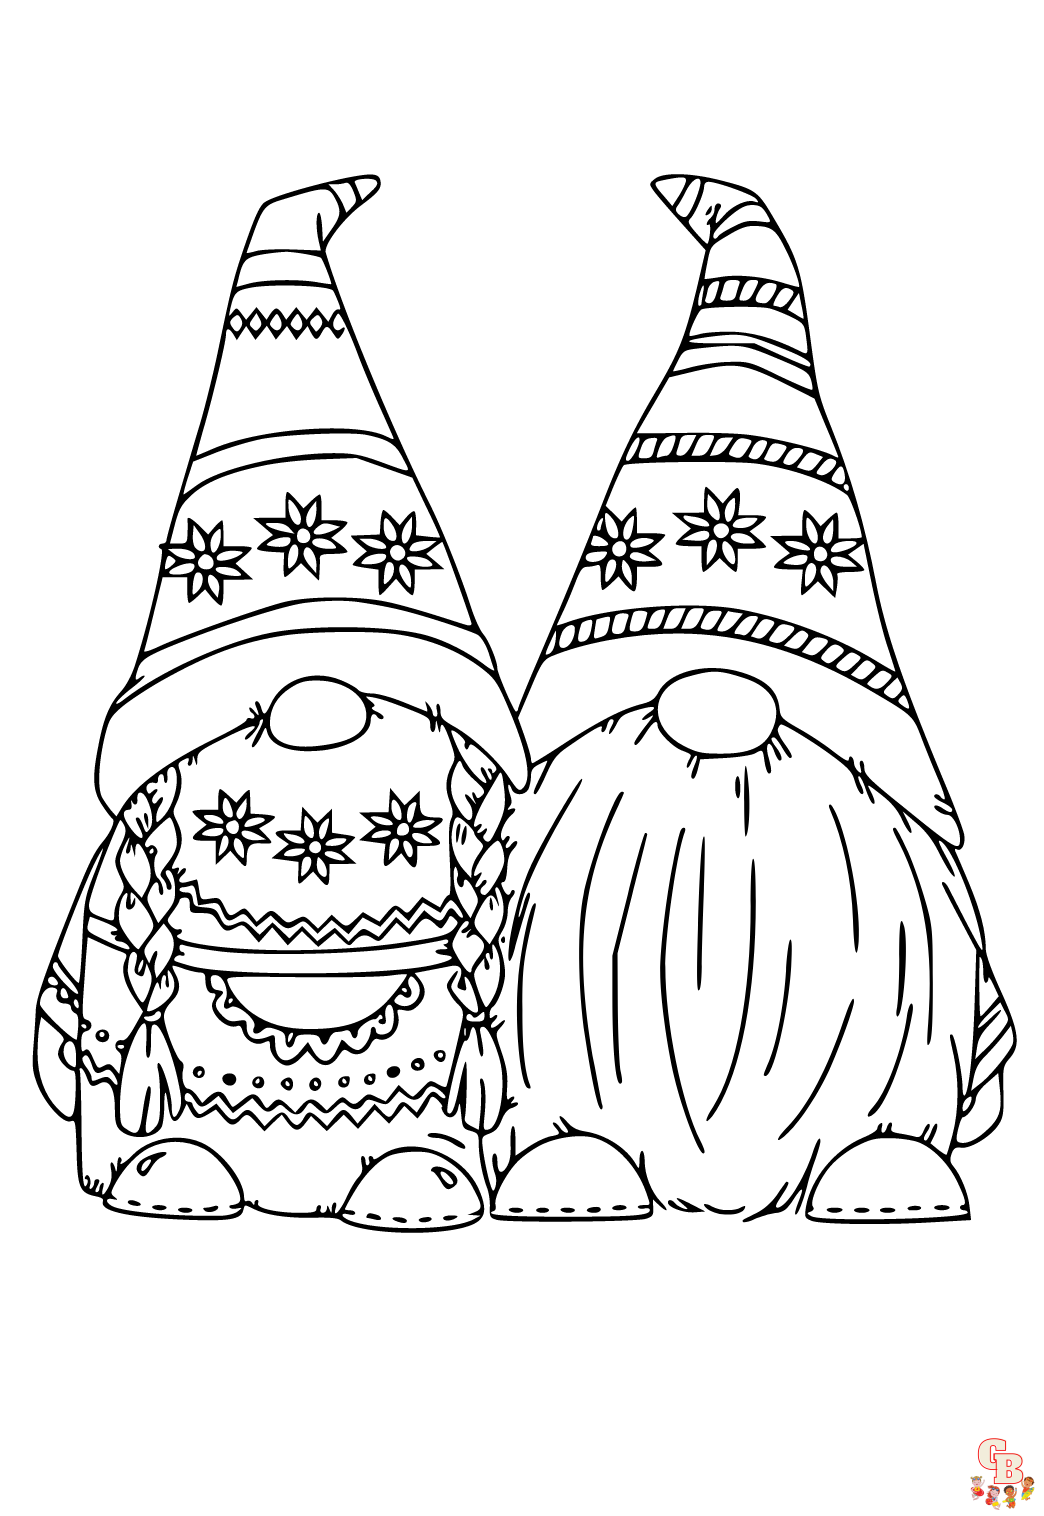 ostern gnome ausmalbilder zum ausdrucken